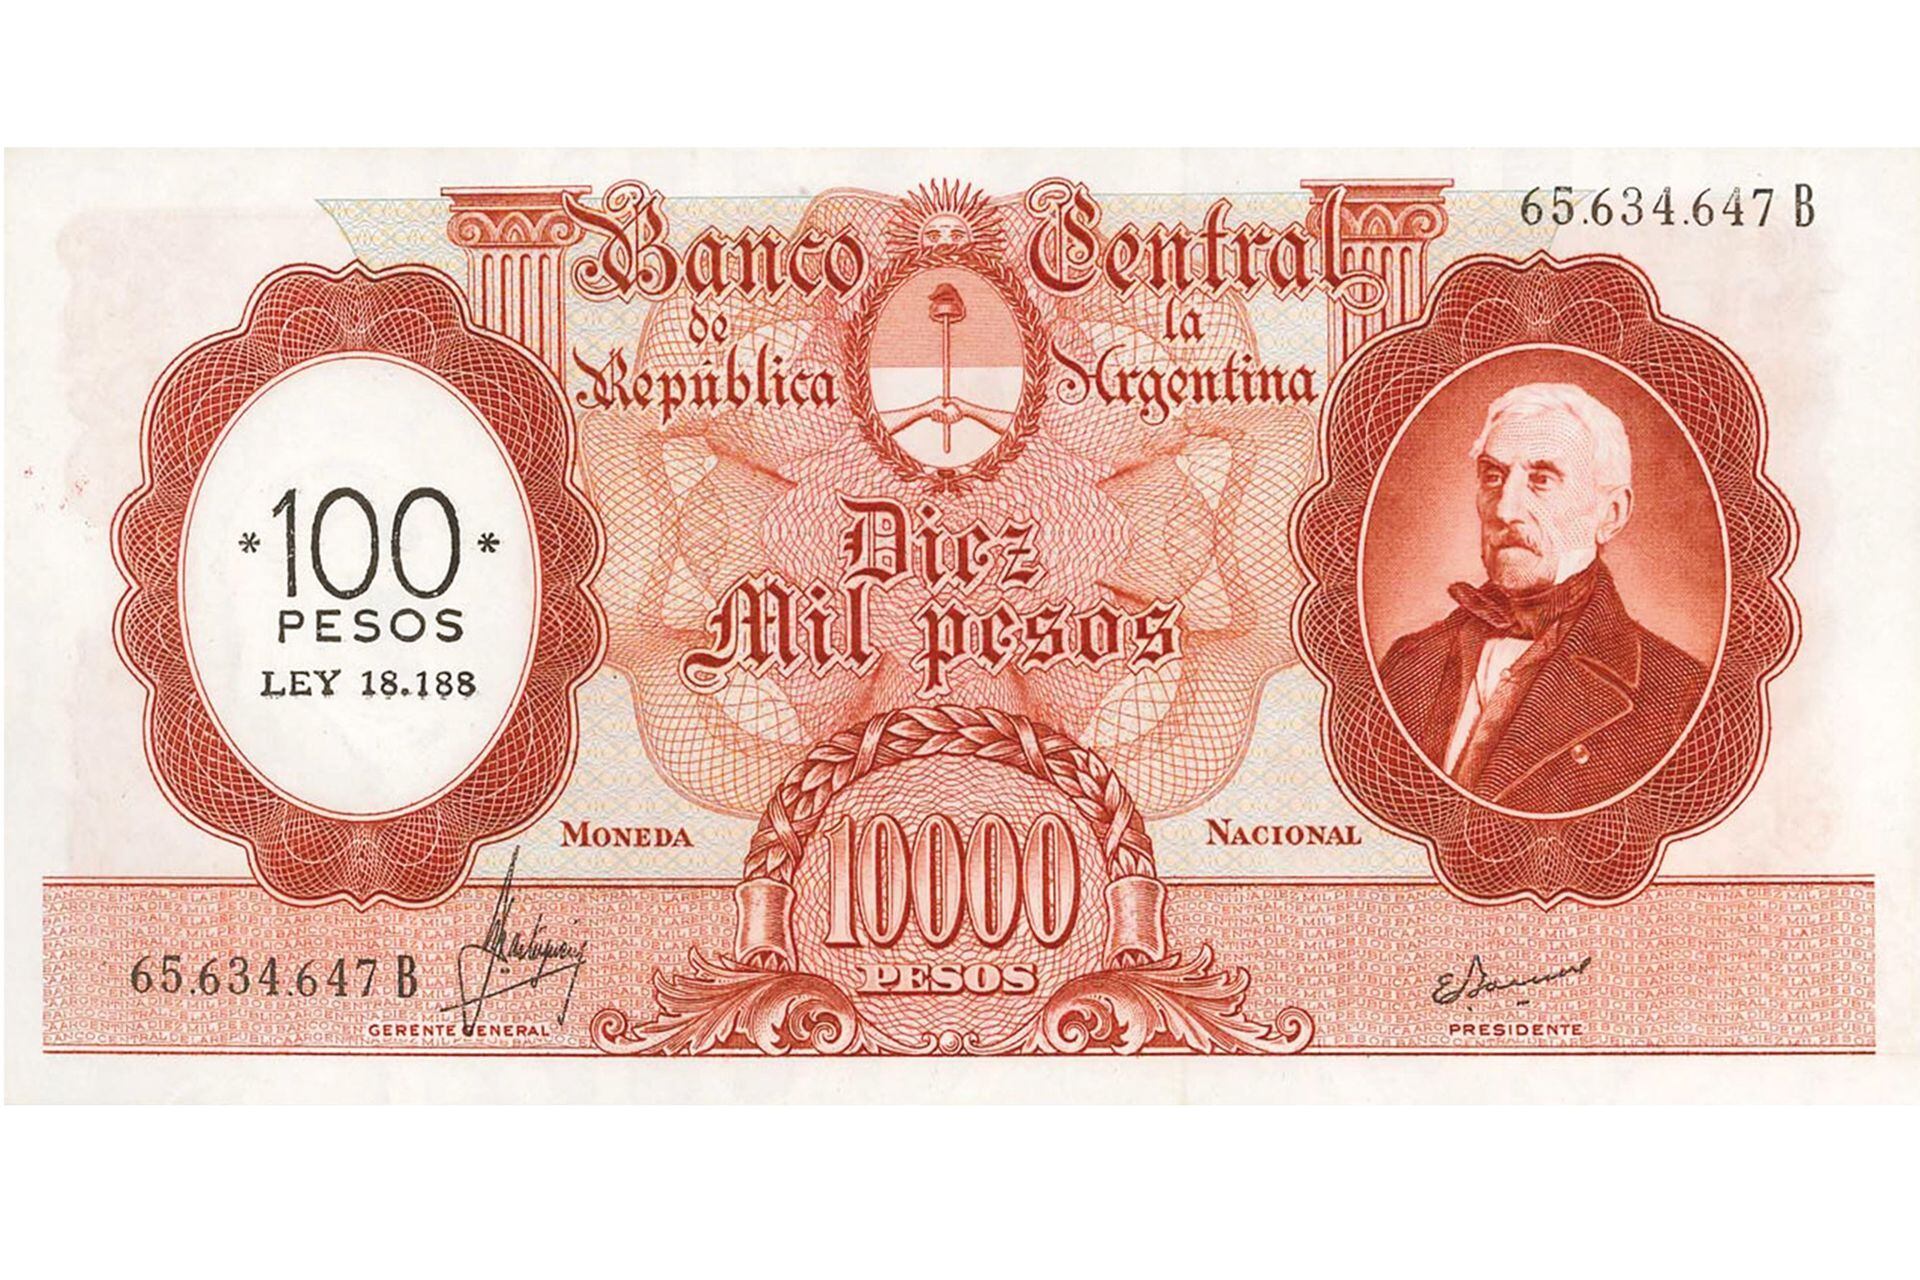 El billete de 10.000 pesos: en Argentina se empezó a hacer costumbre reformular la moneda para lidiar con los estragos de la inflación